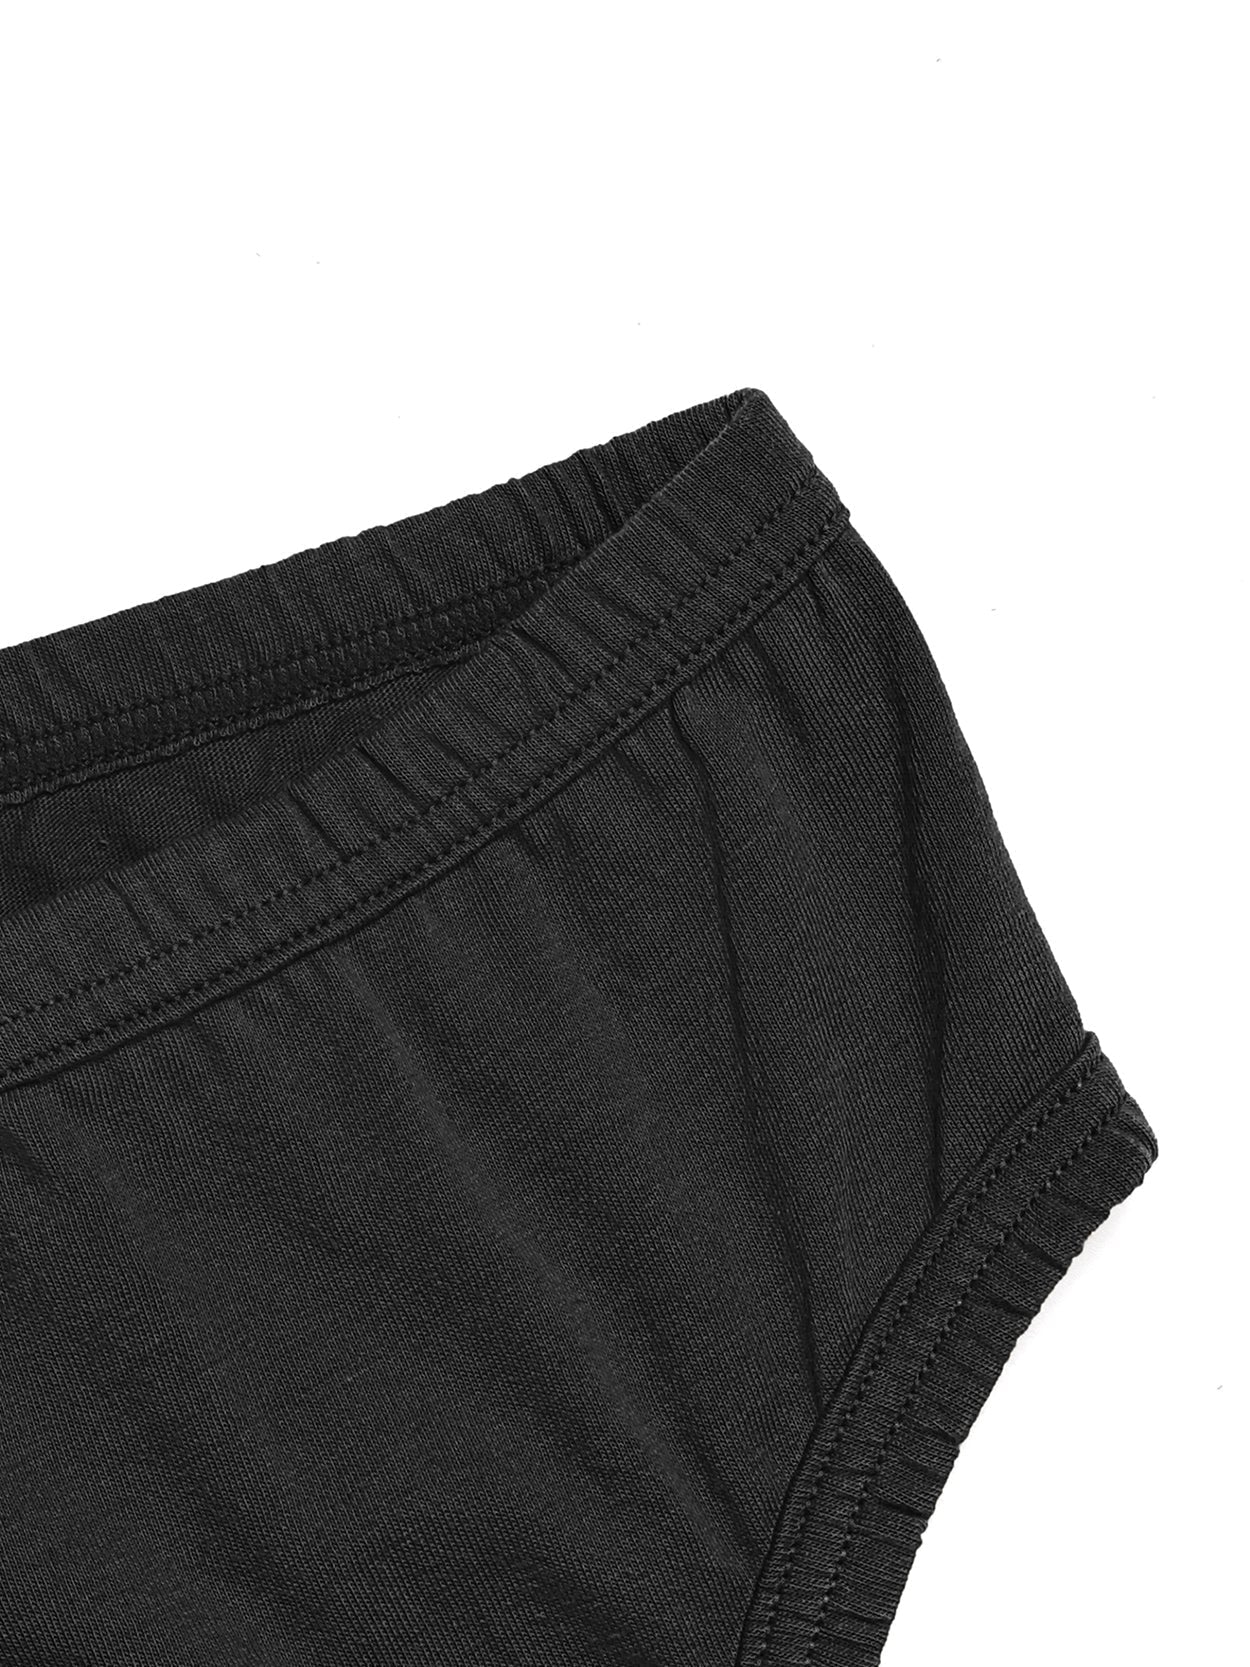 High-Cut Brief Cotton Plus Size Underwear 3 PCS Black